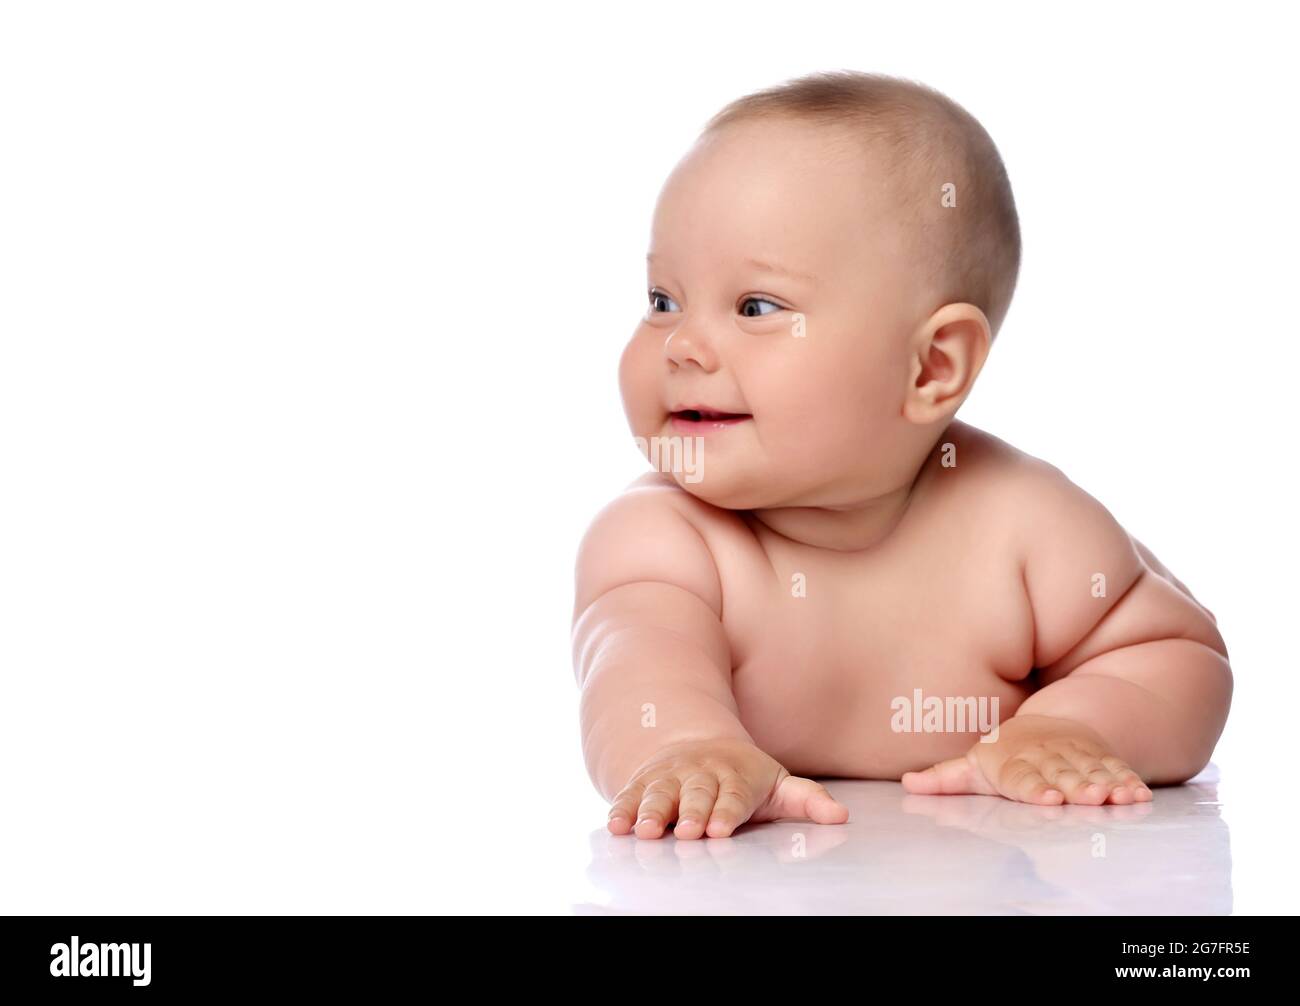 Lächelnd, kichernd Kleinkind Baby Mädchen Kind in Windel liegt auf ihrem Bauch mit ausgestrecktem Arm und schaut zur Seite Stockfoto